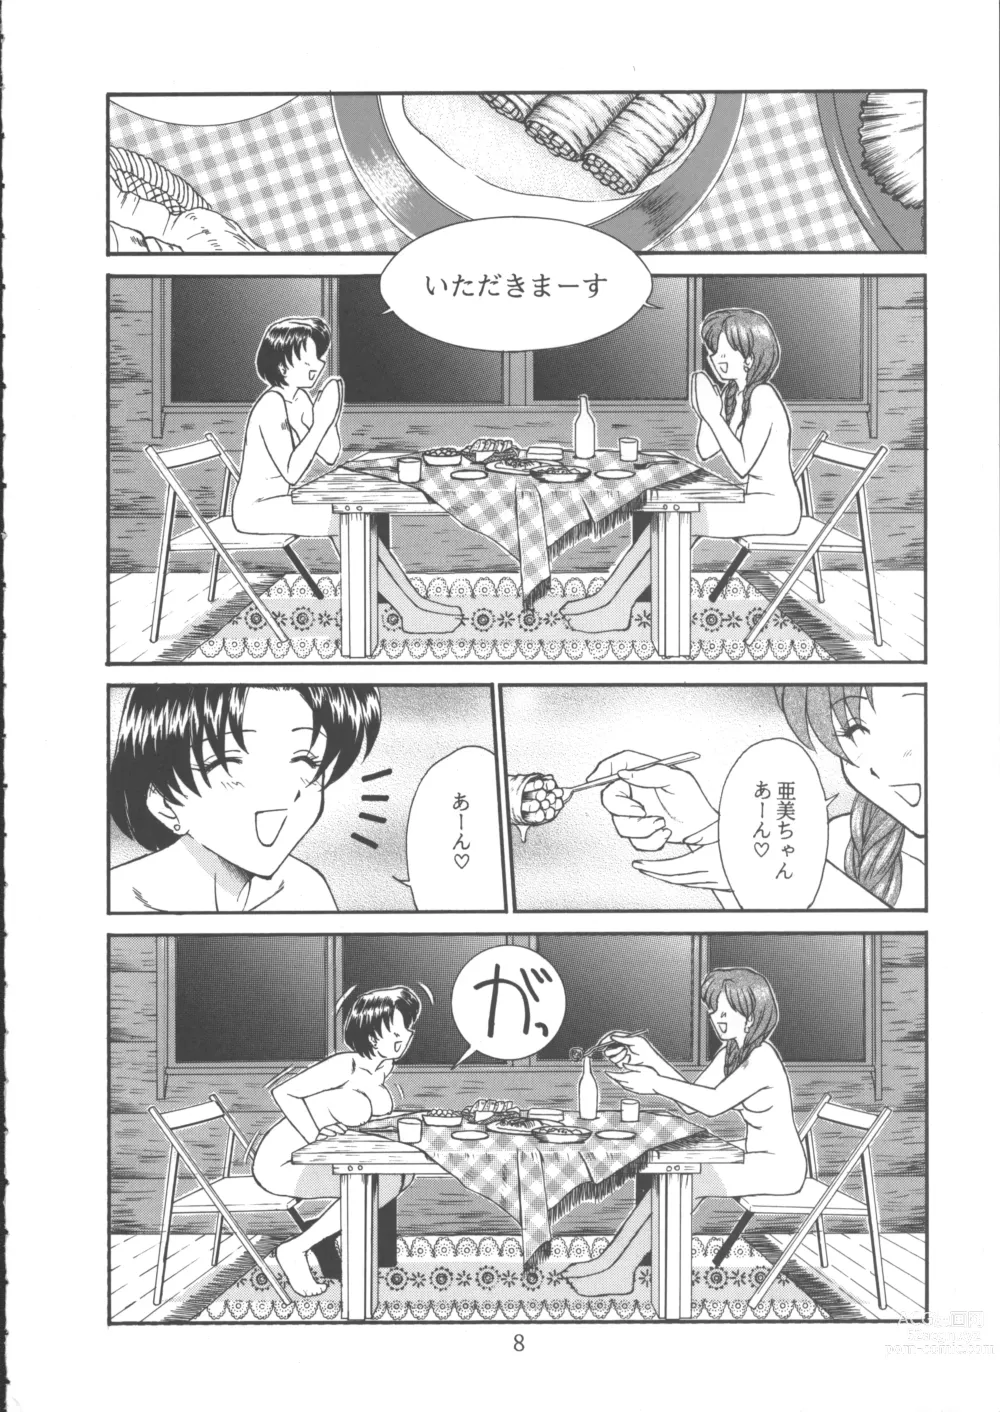 Page 7 of doujinshi PERFECT CIRCLE